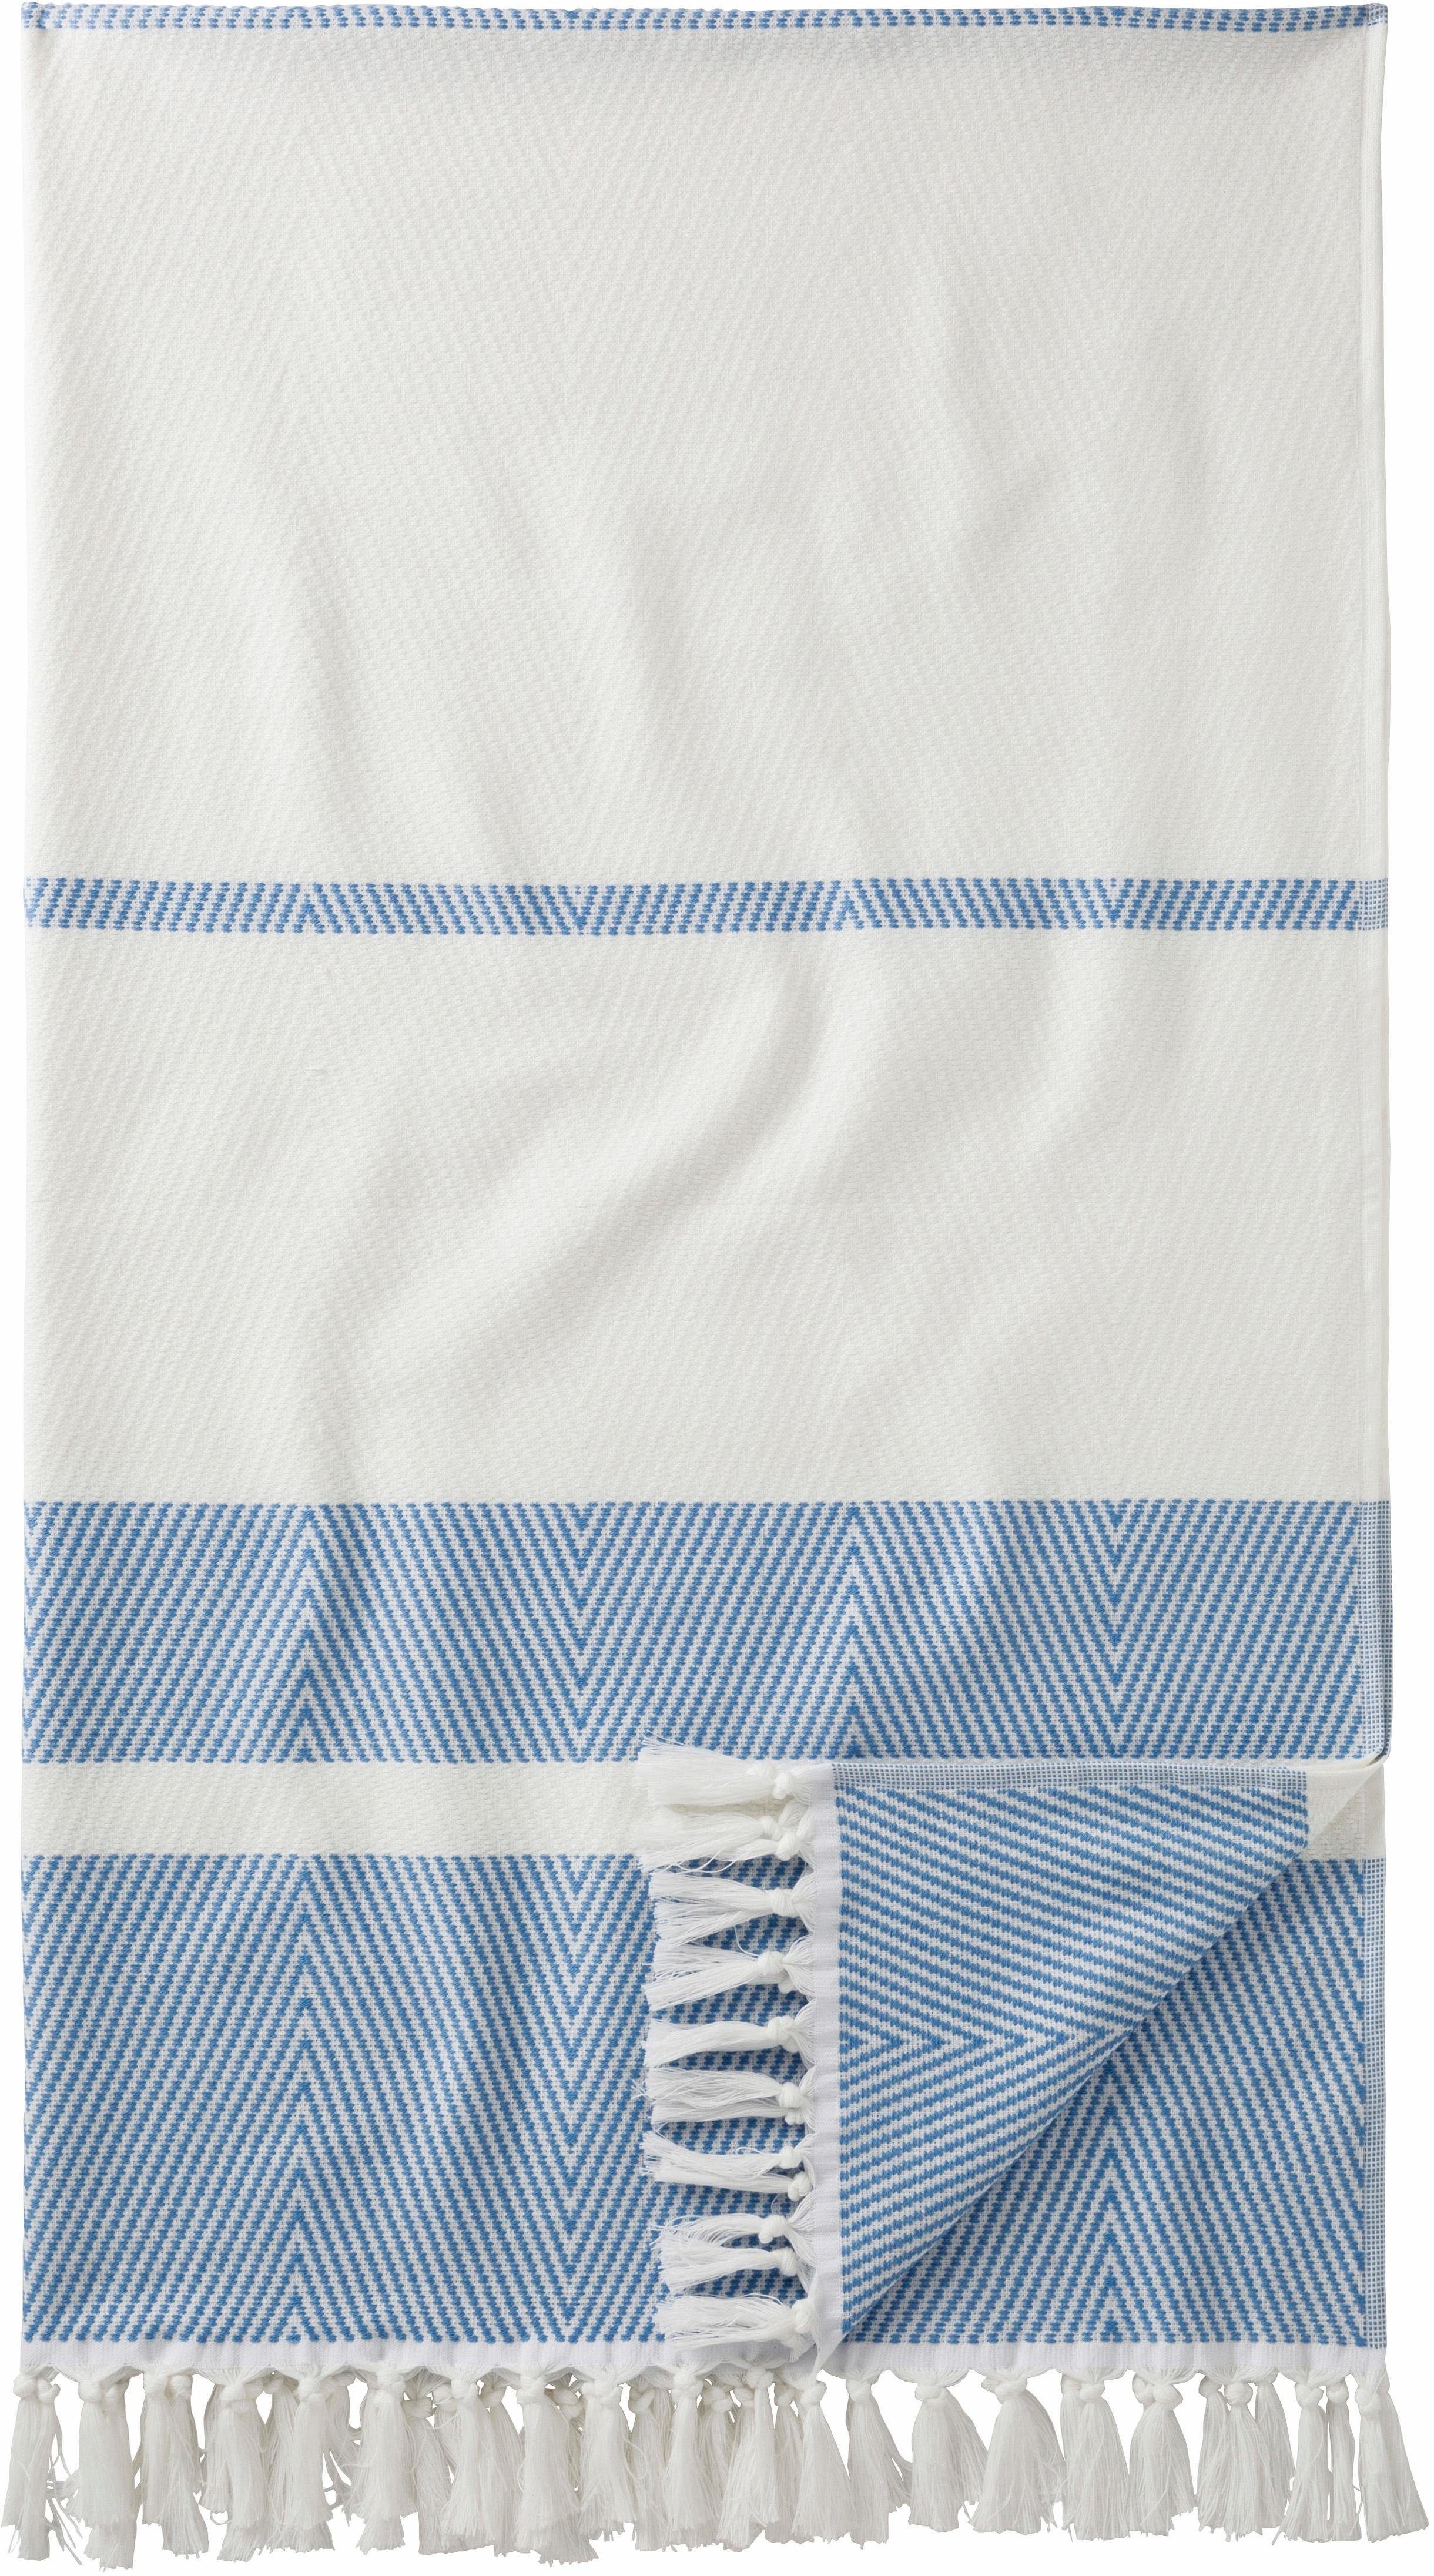 Egeria Hamamtuch Pestemal Herri, Hamam Frottier (1-St), 100x180 cm, mit Muster & Fransen, ideal als Strandtuch blau | Alle Handtücher